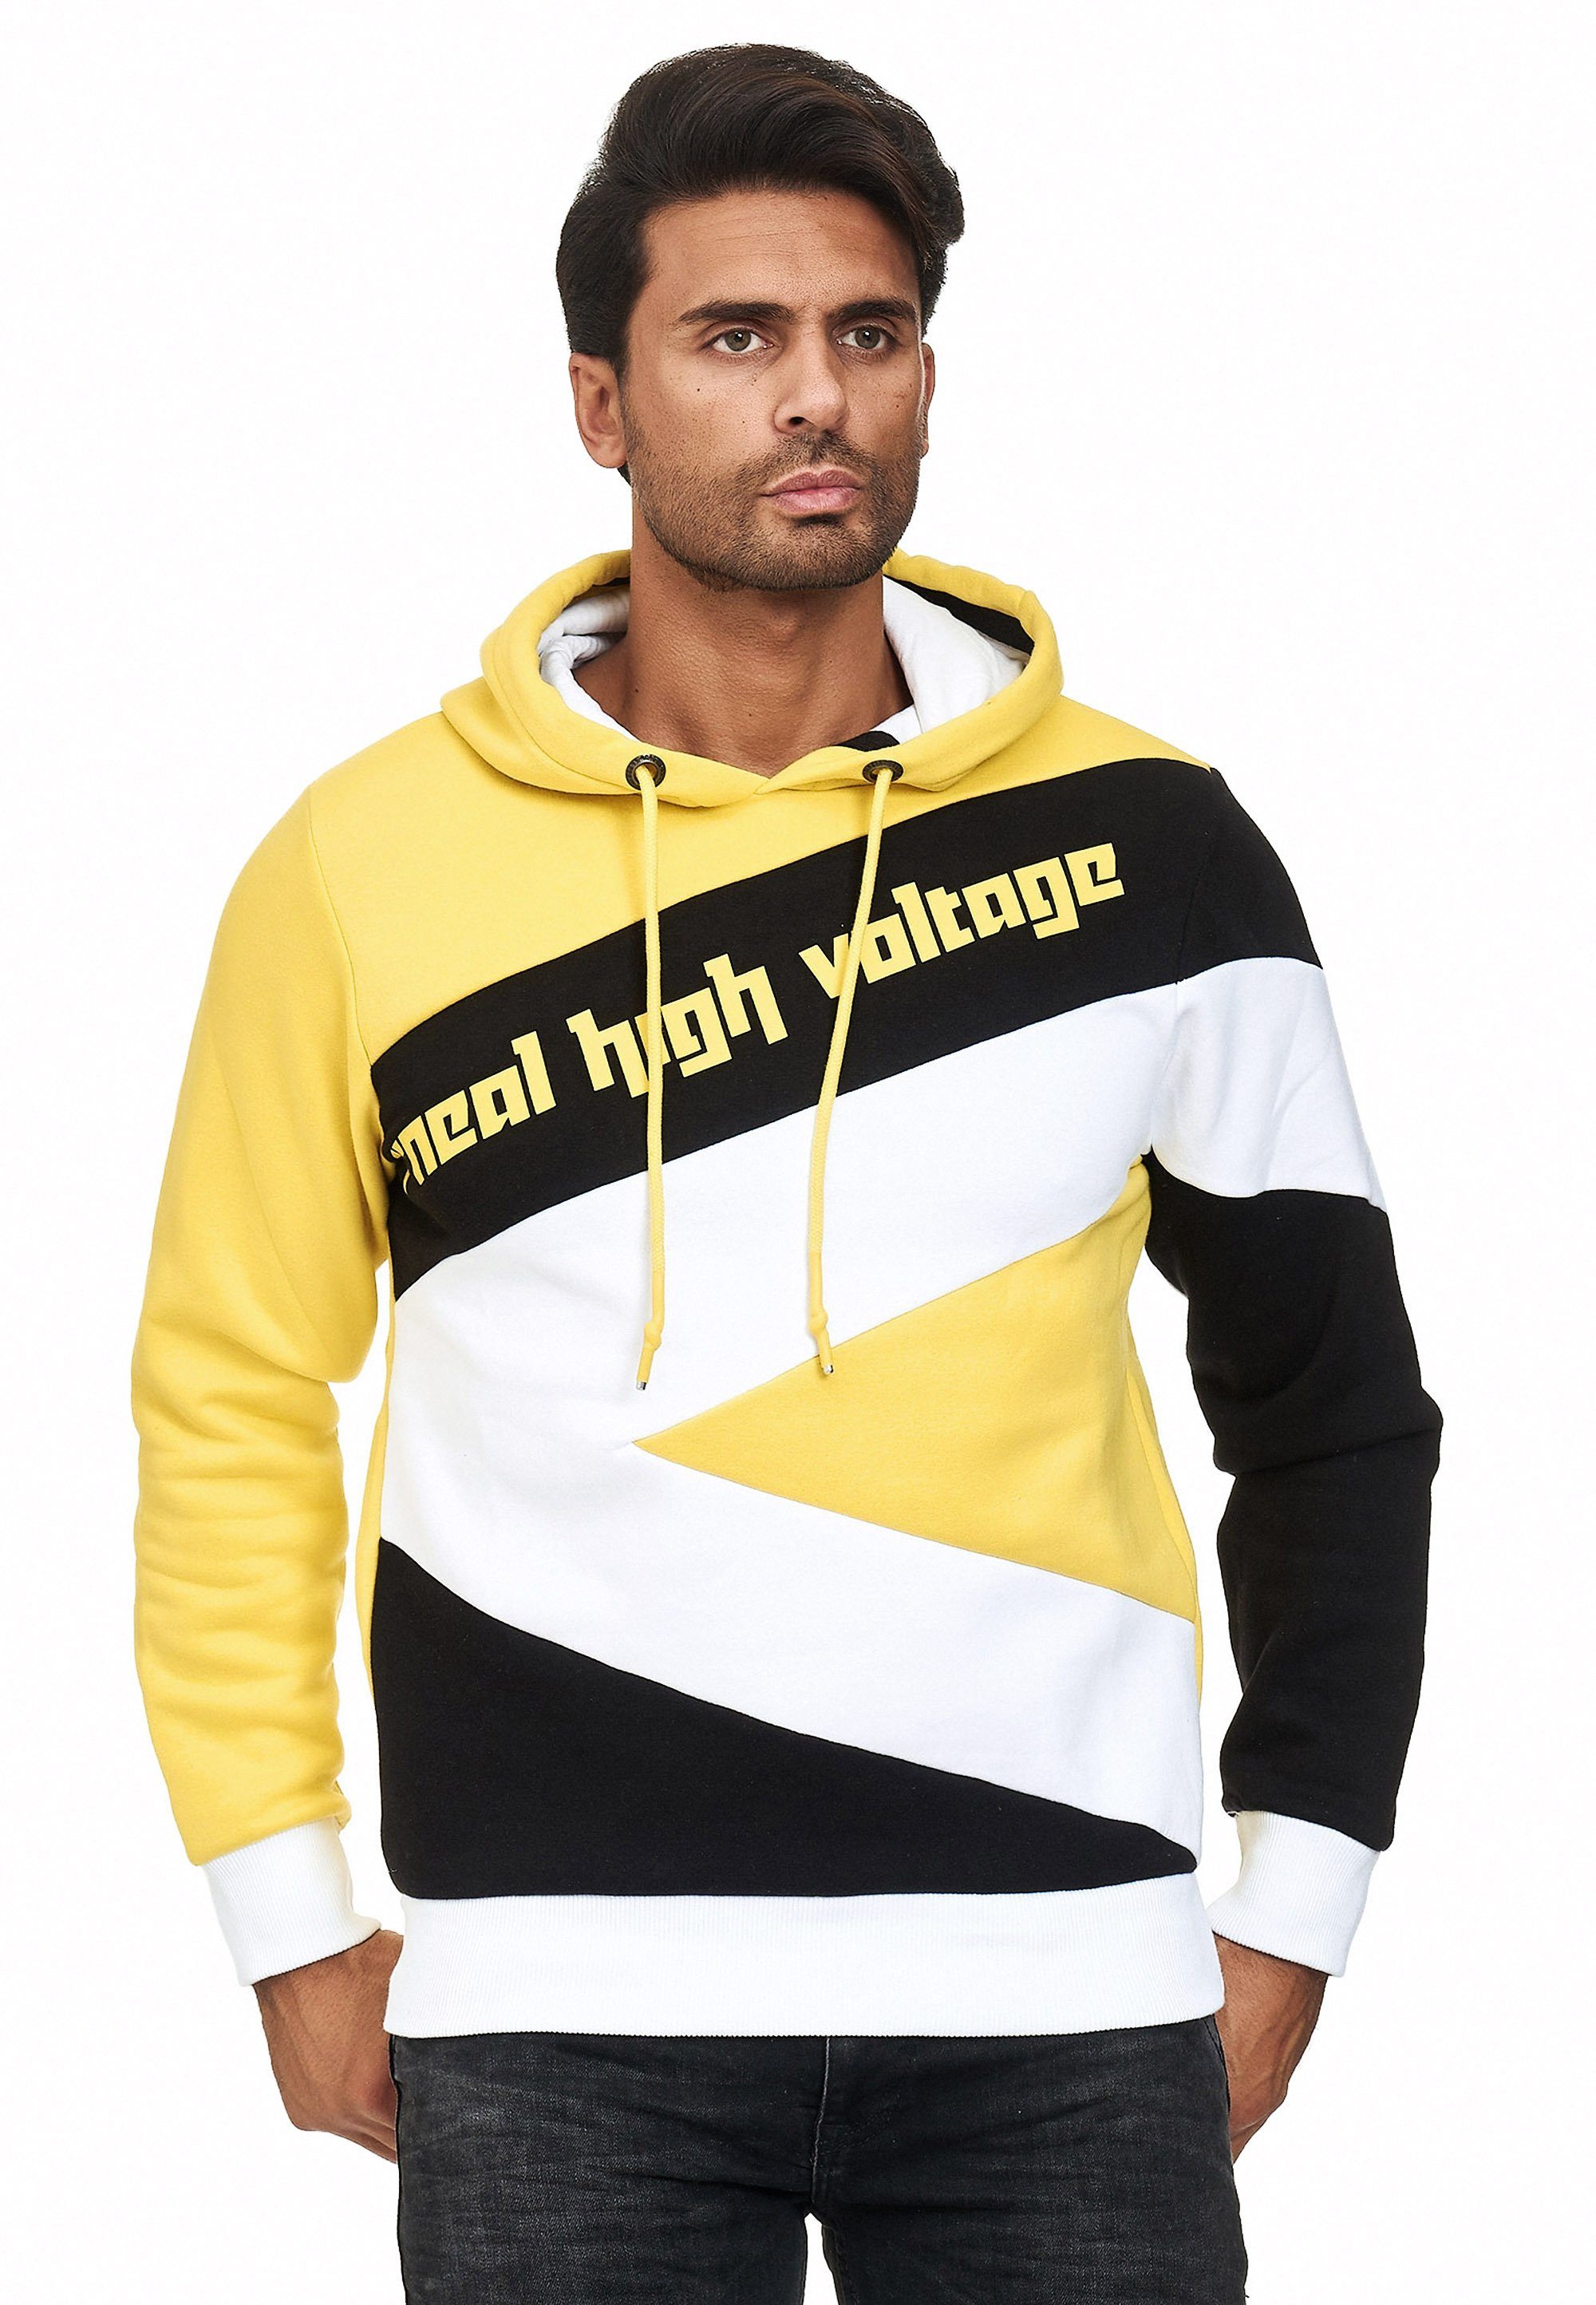 Neal gelb-schwarz sportlichem in Rusty Kapuzensweatshirt Design